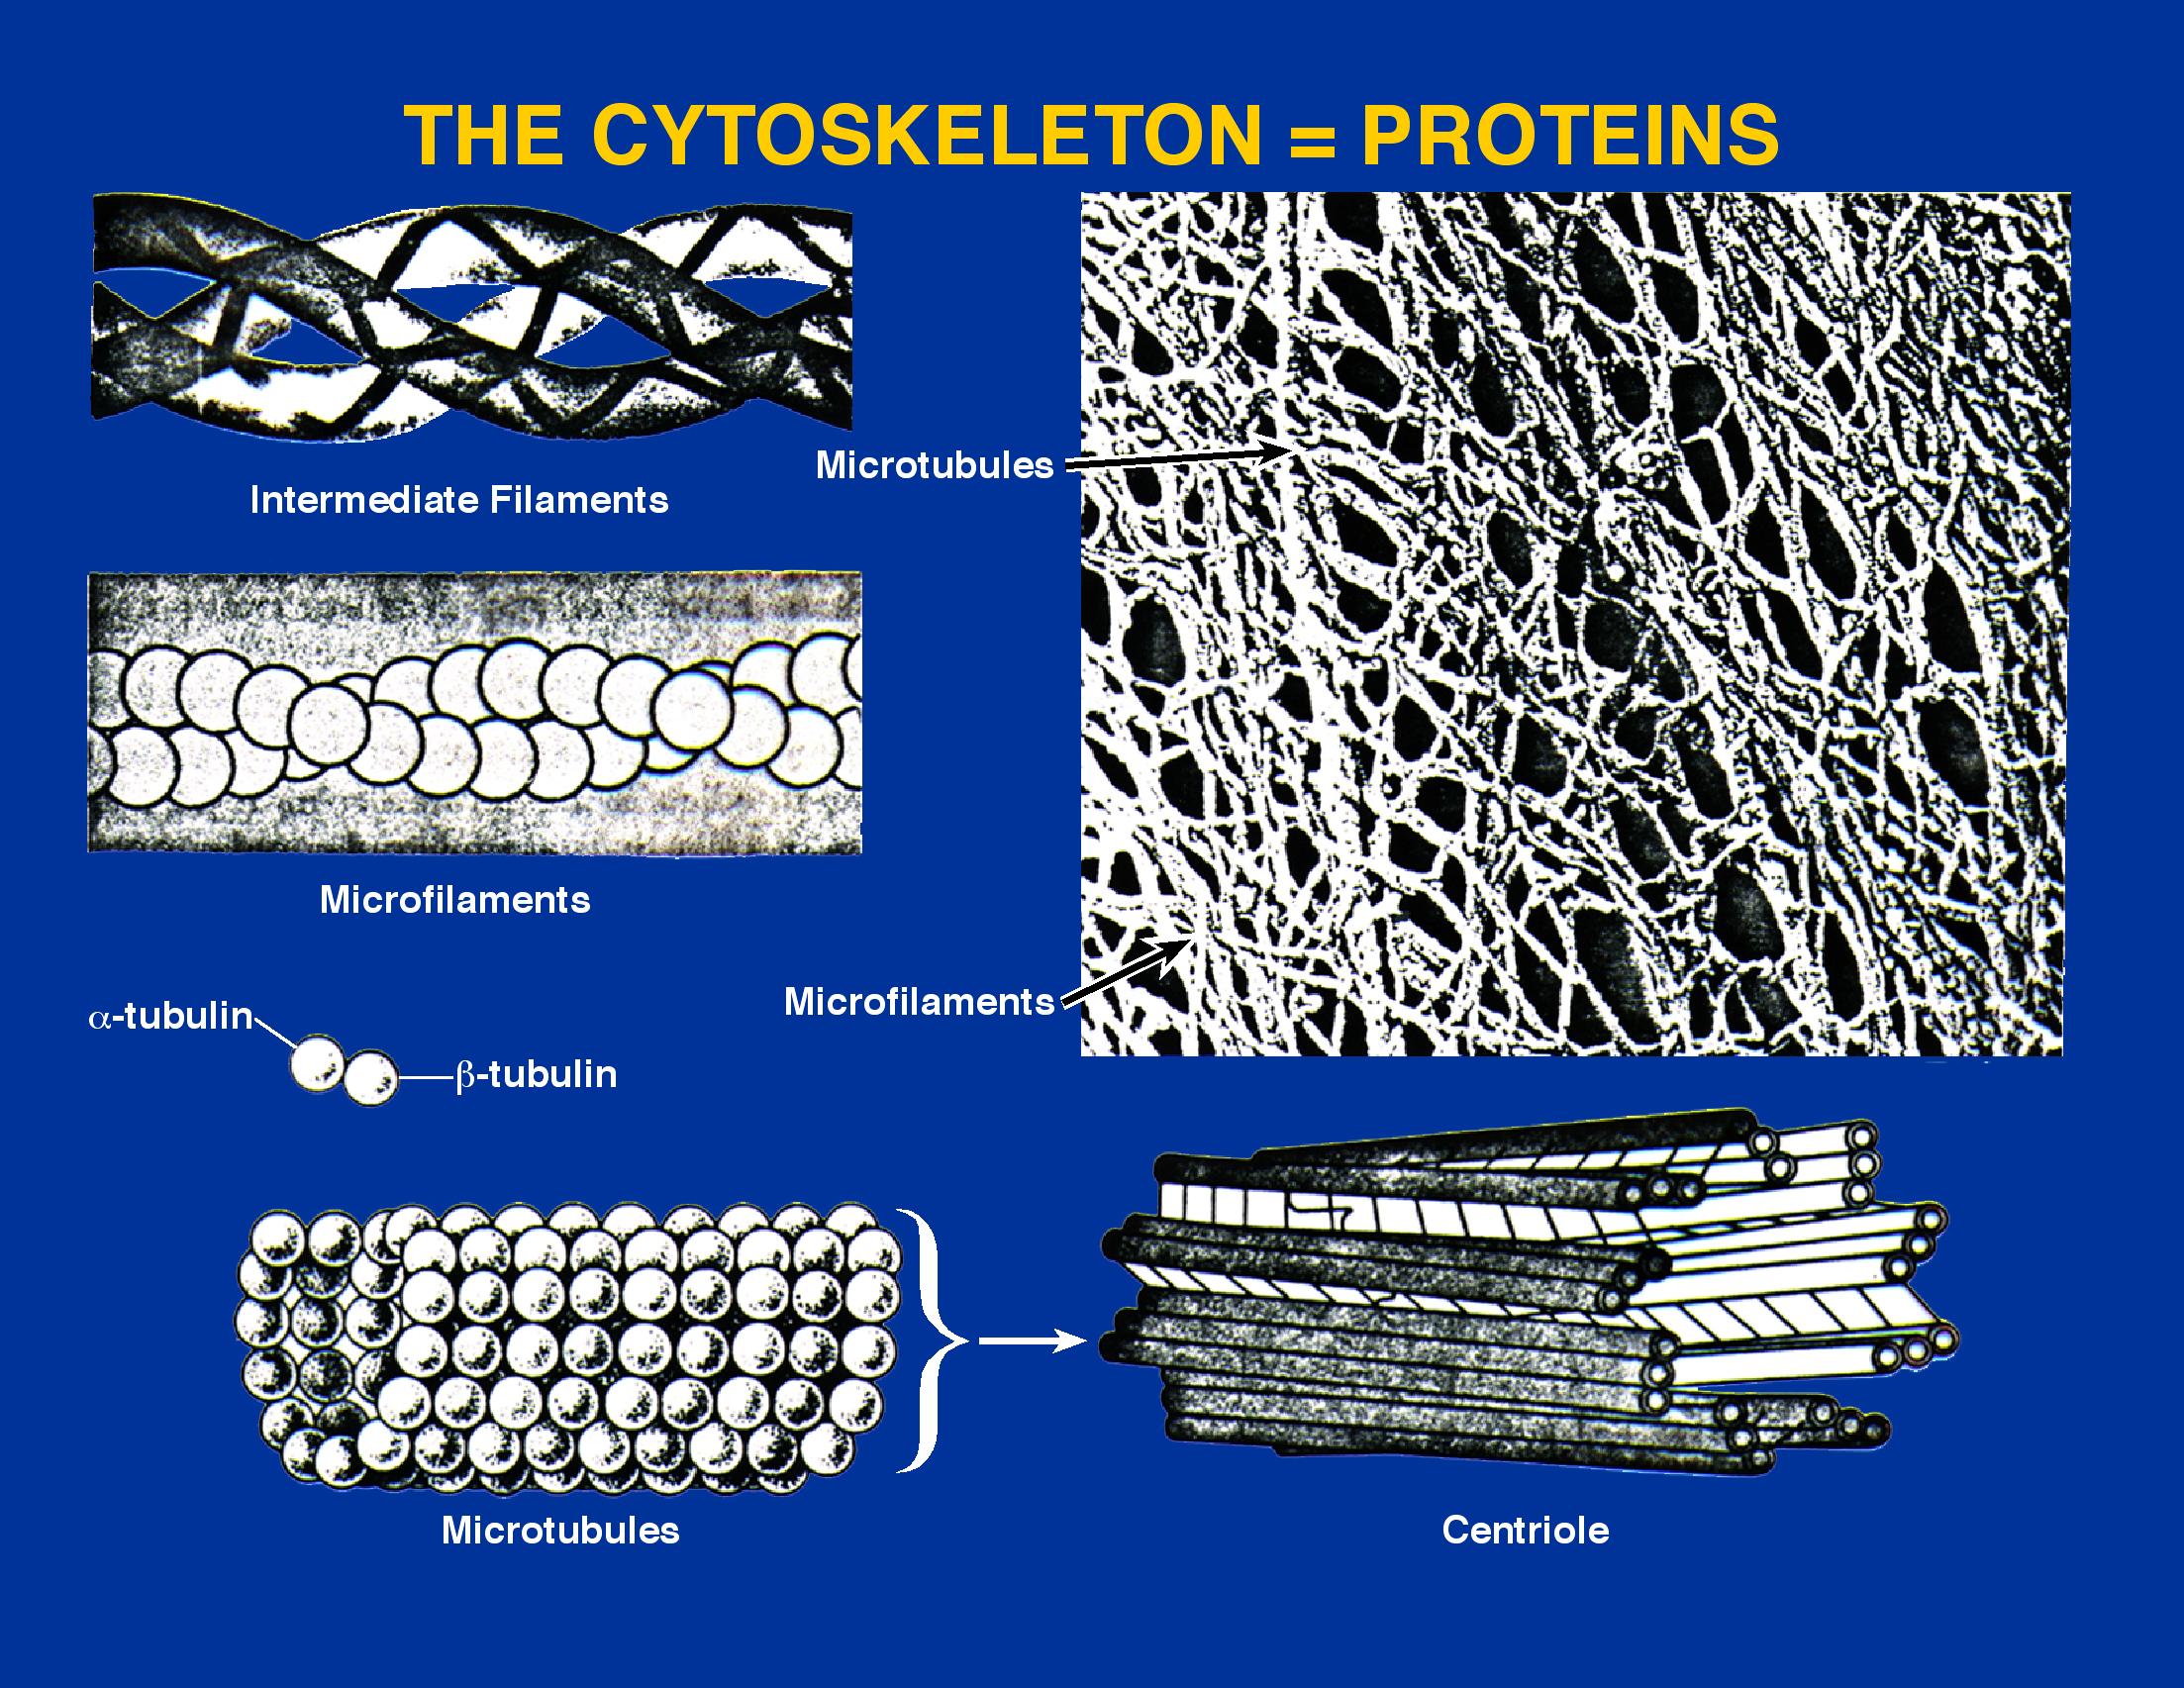 Cytoskeletal elements